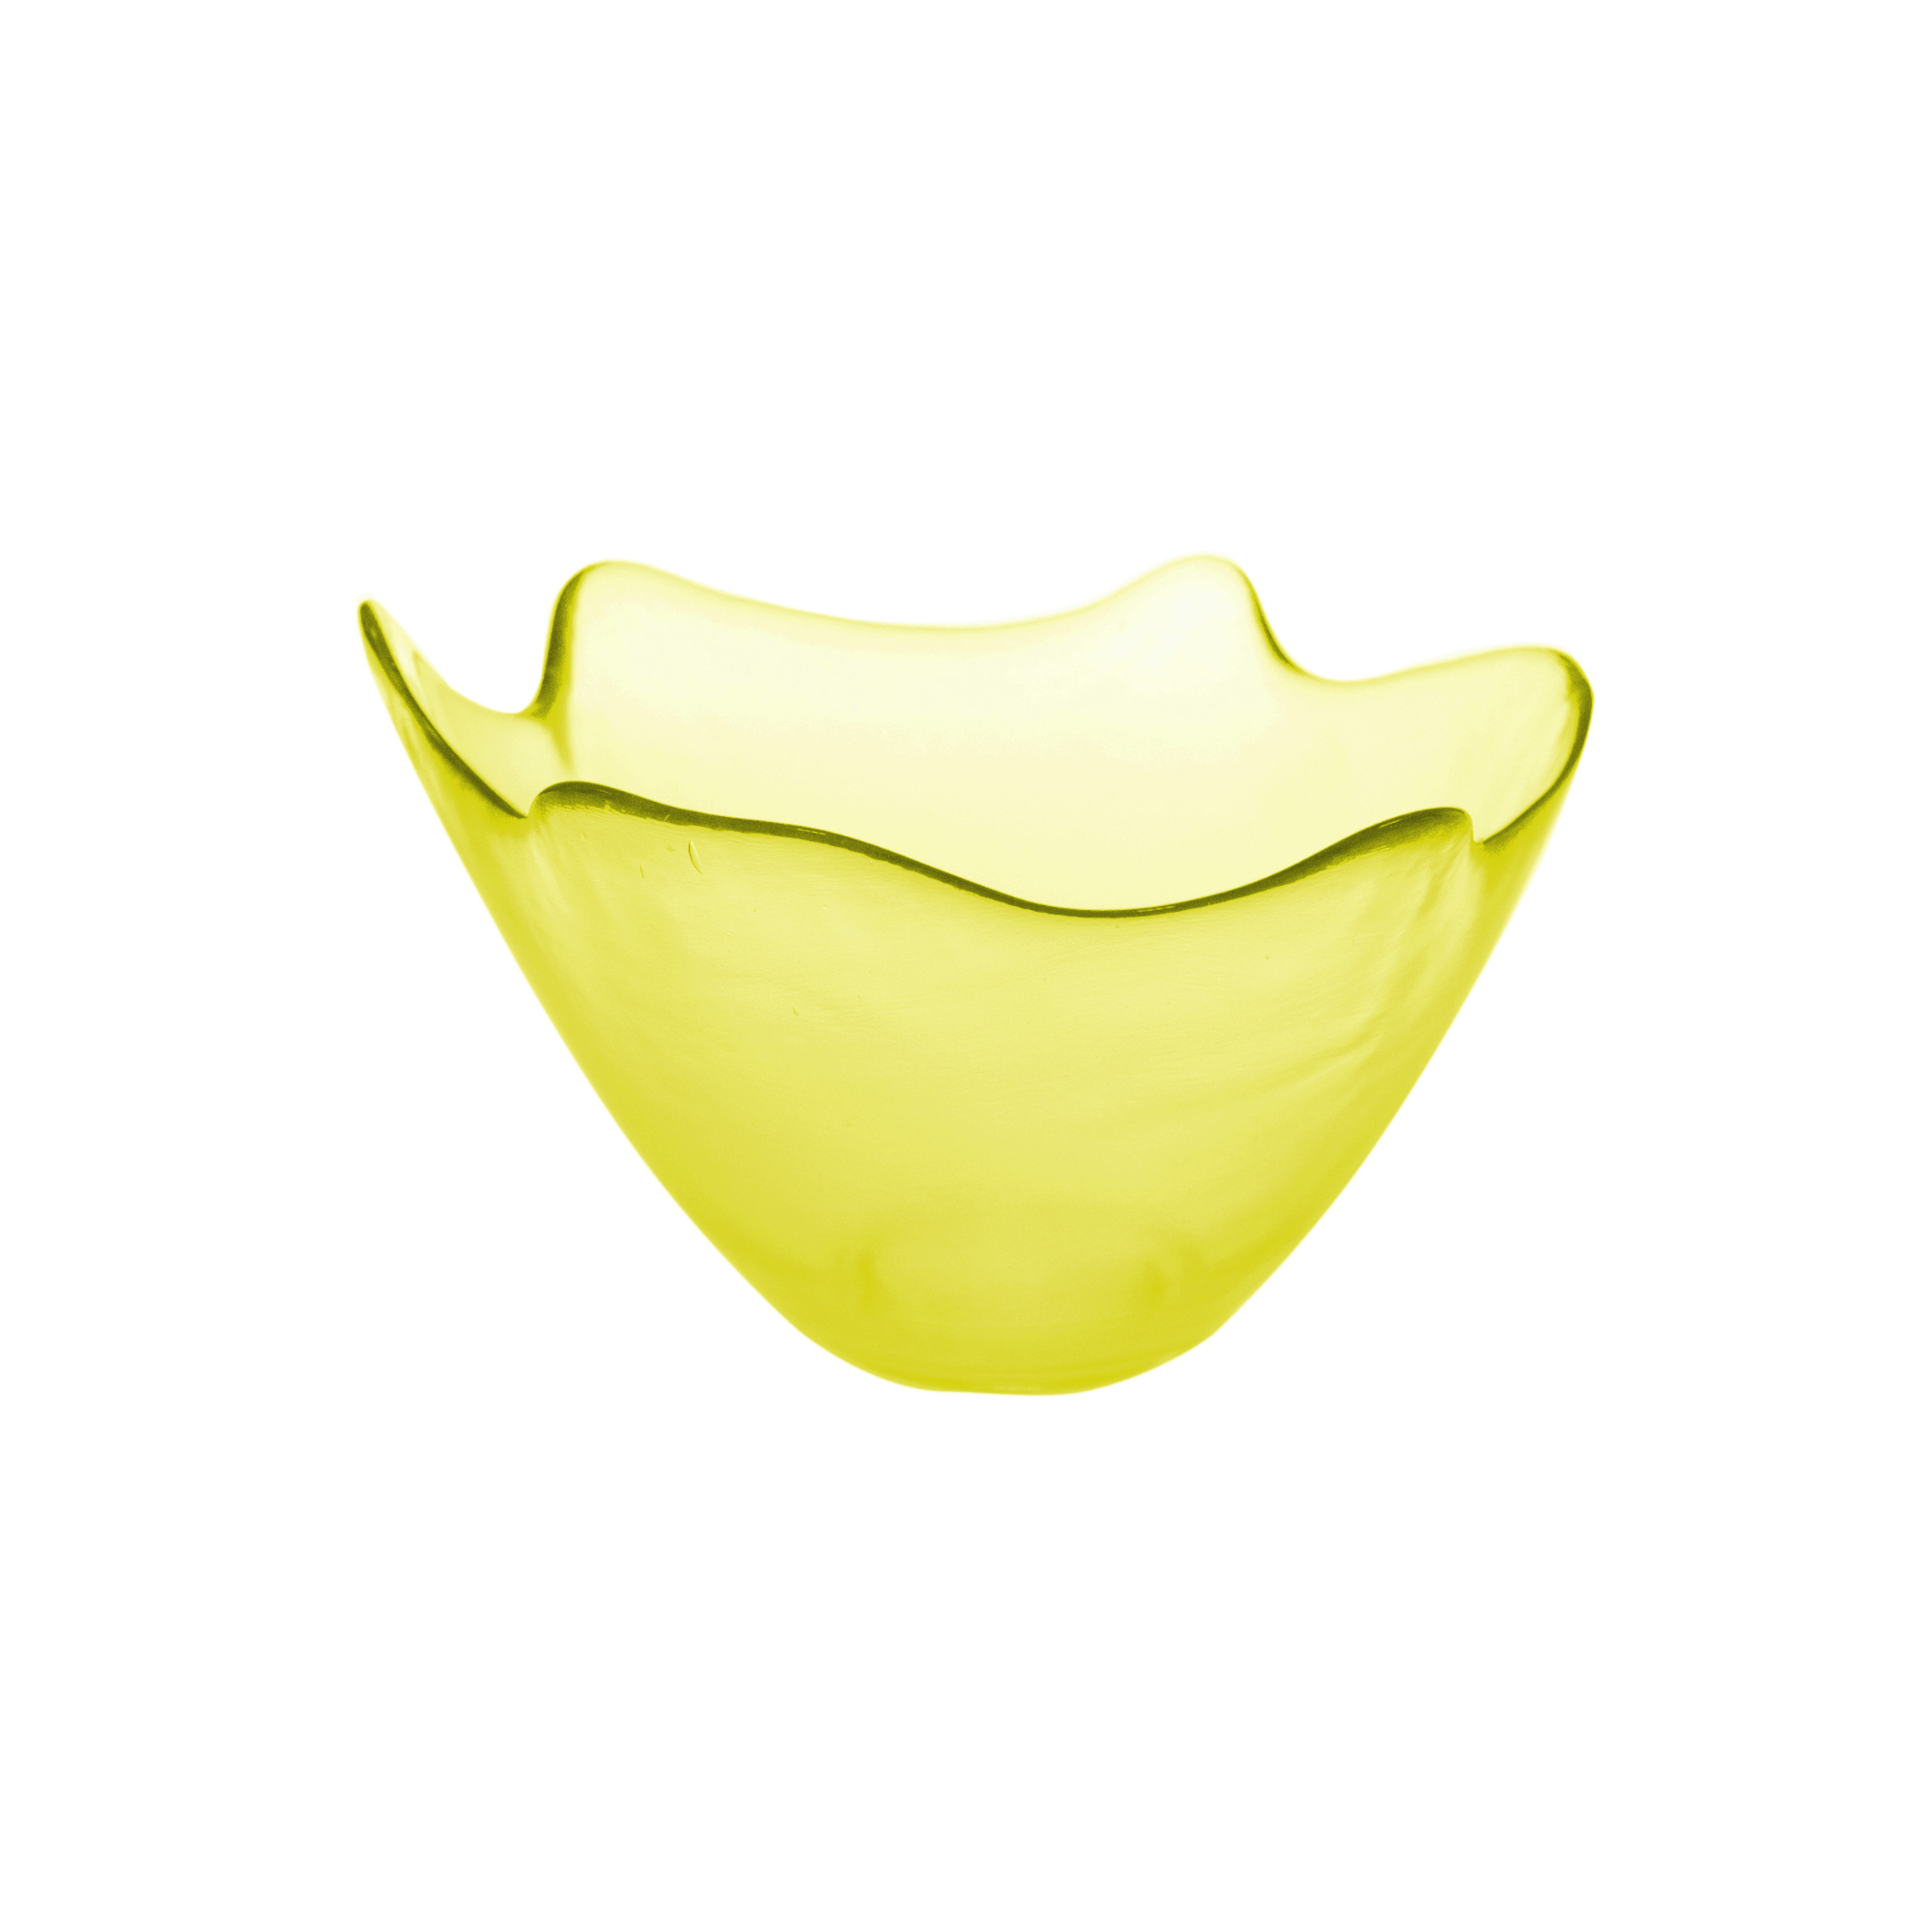 Ваза San miguel Feston лимонный 20 см ваза san miguel enea зелёная 20 см